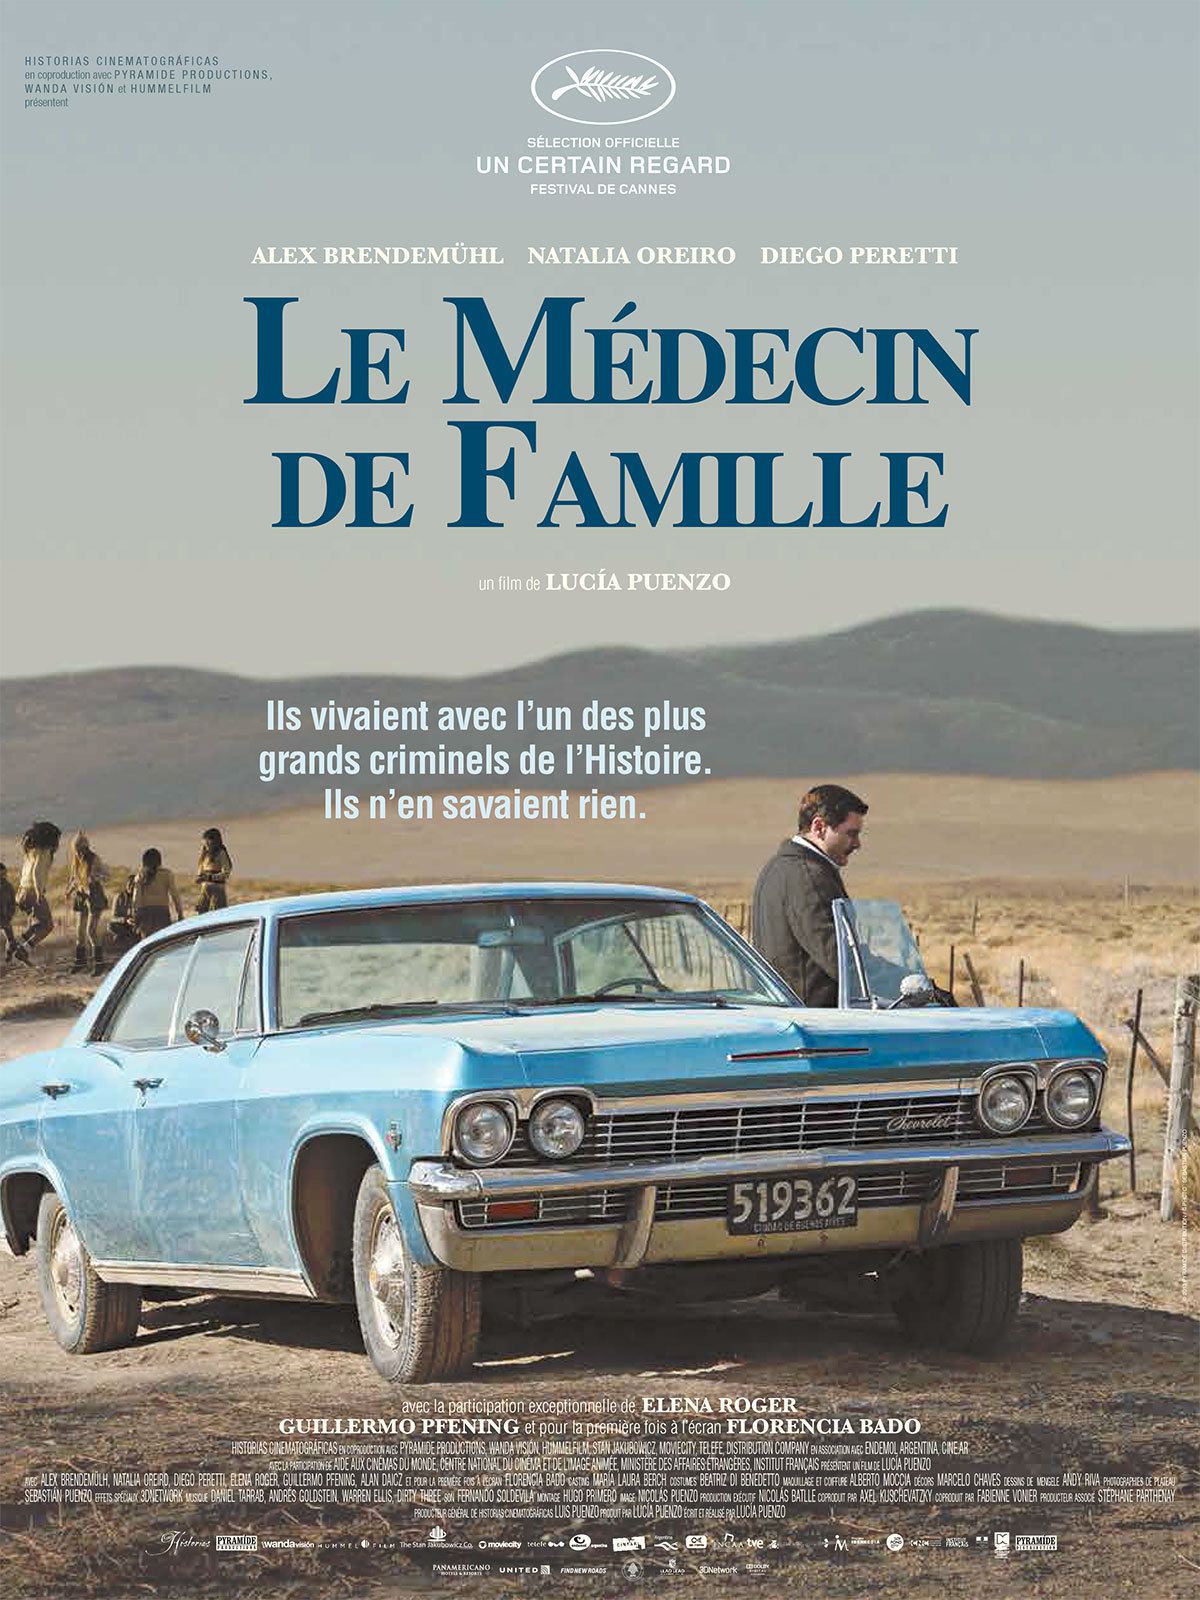 Le Médecin de famille - Film (2013) streaming VF gratuit complet